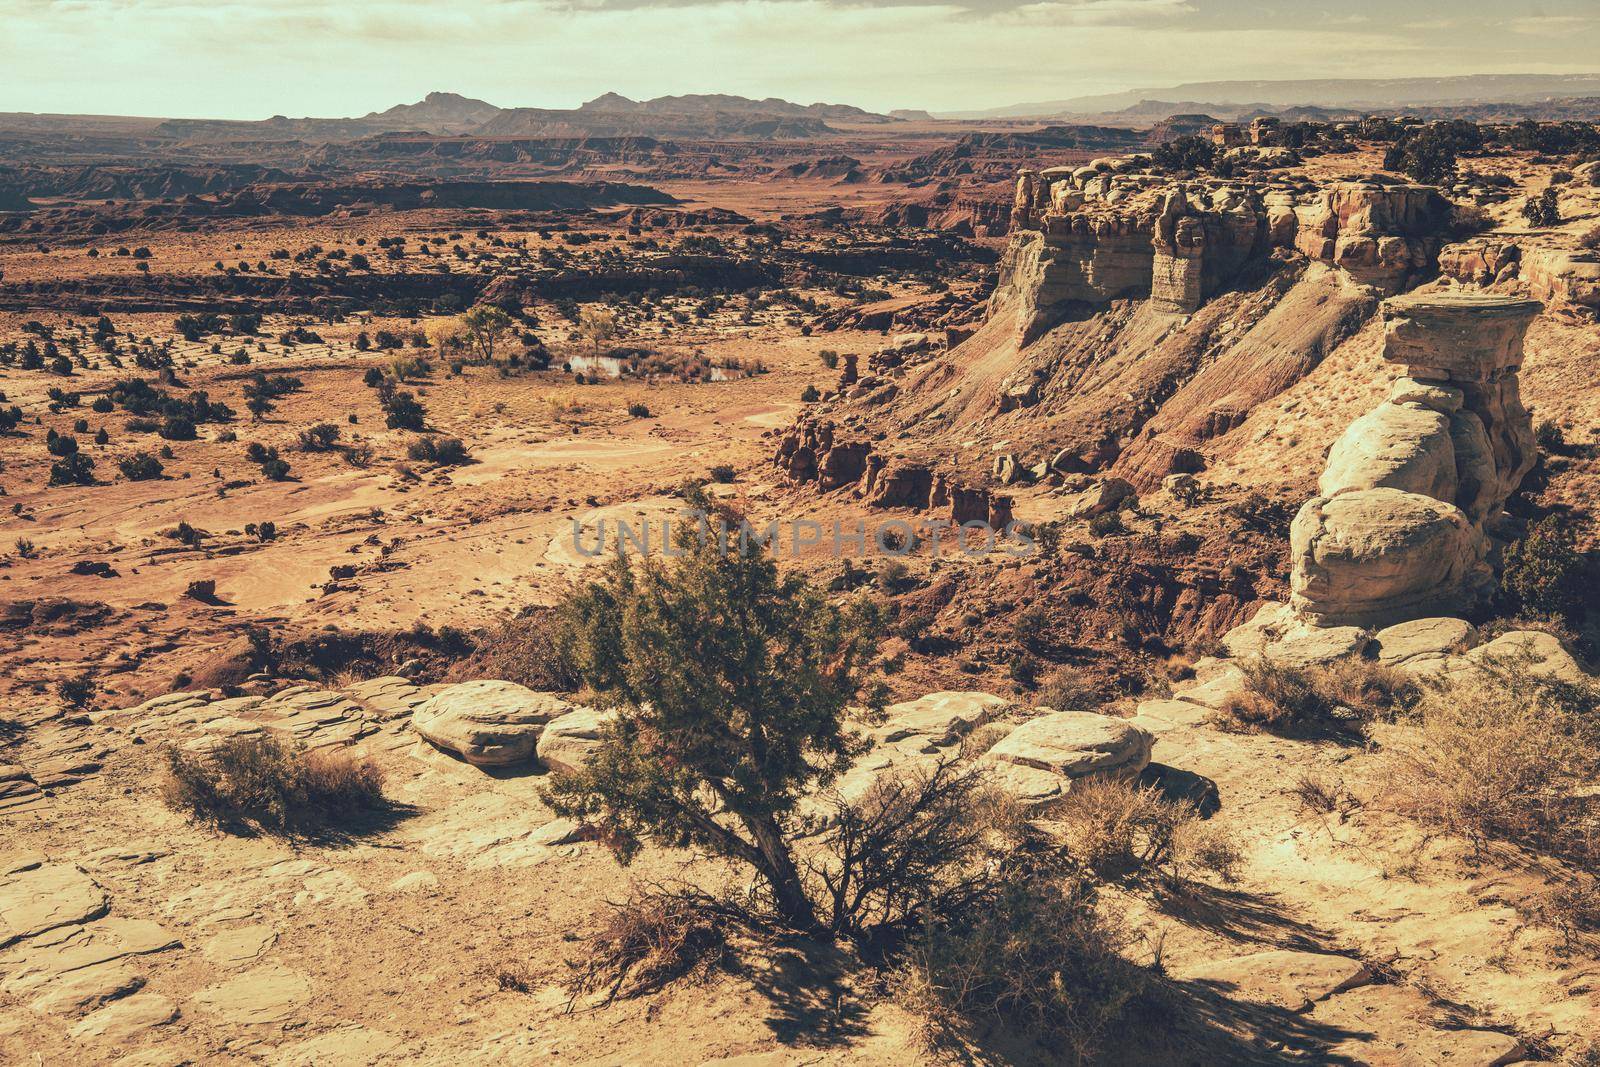 Raw Utah Rocky Landscape by welcomia